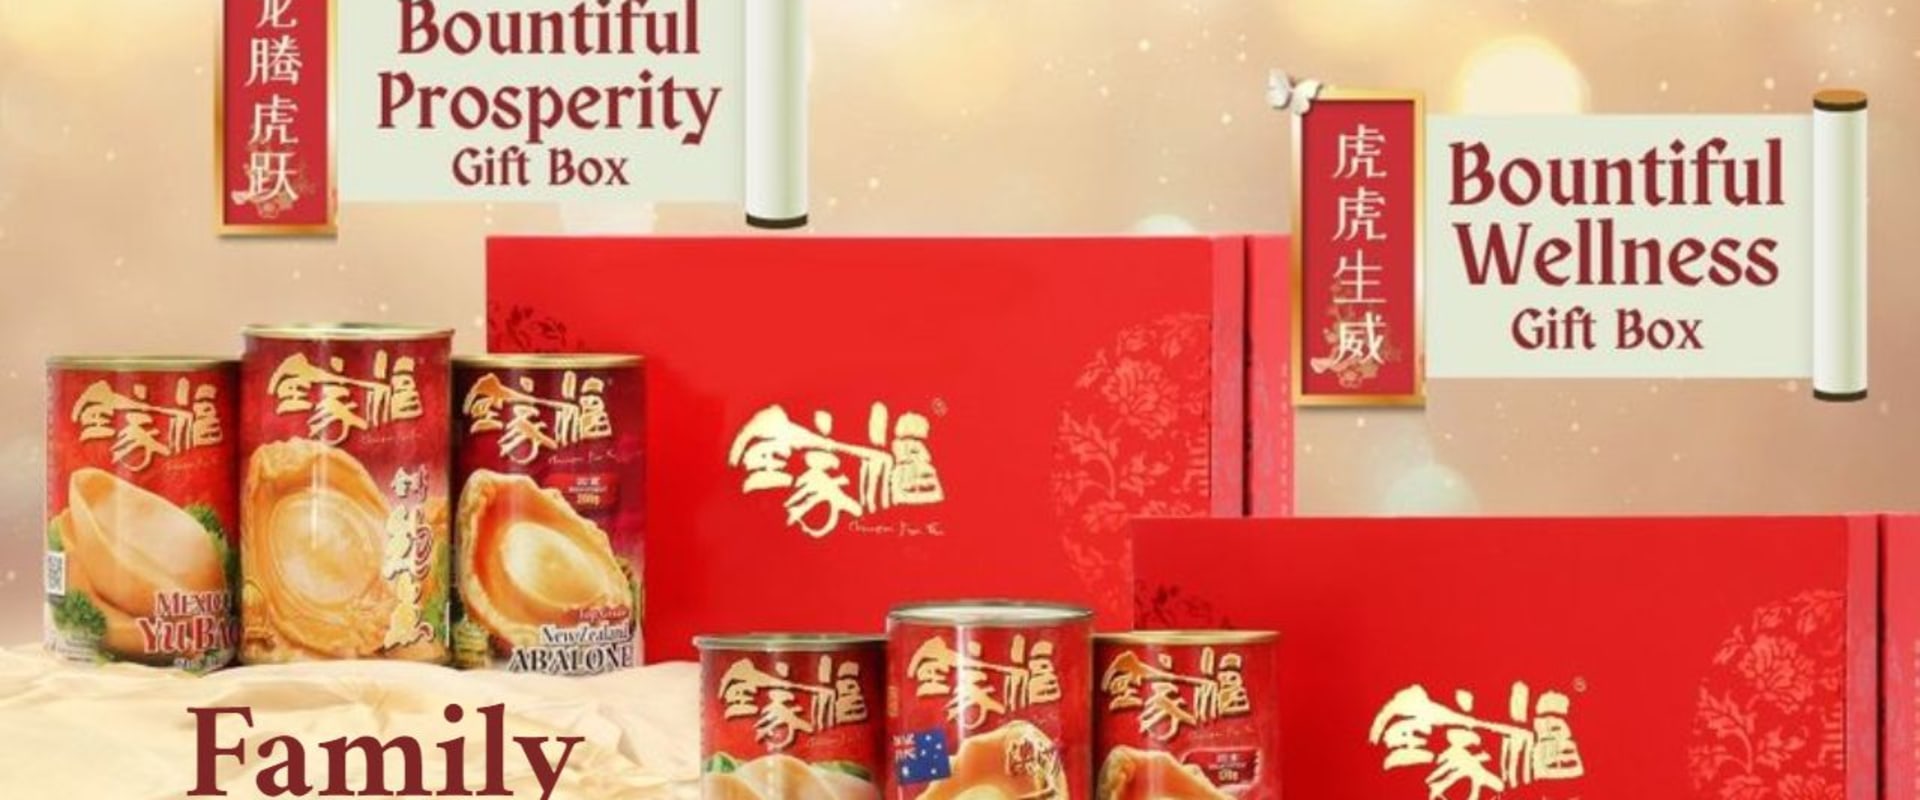 Reviews of Best Canned Abalone Brand: Chuen Jia Fu (全家福)